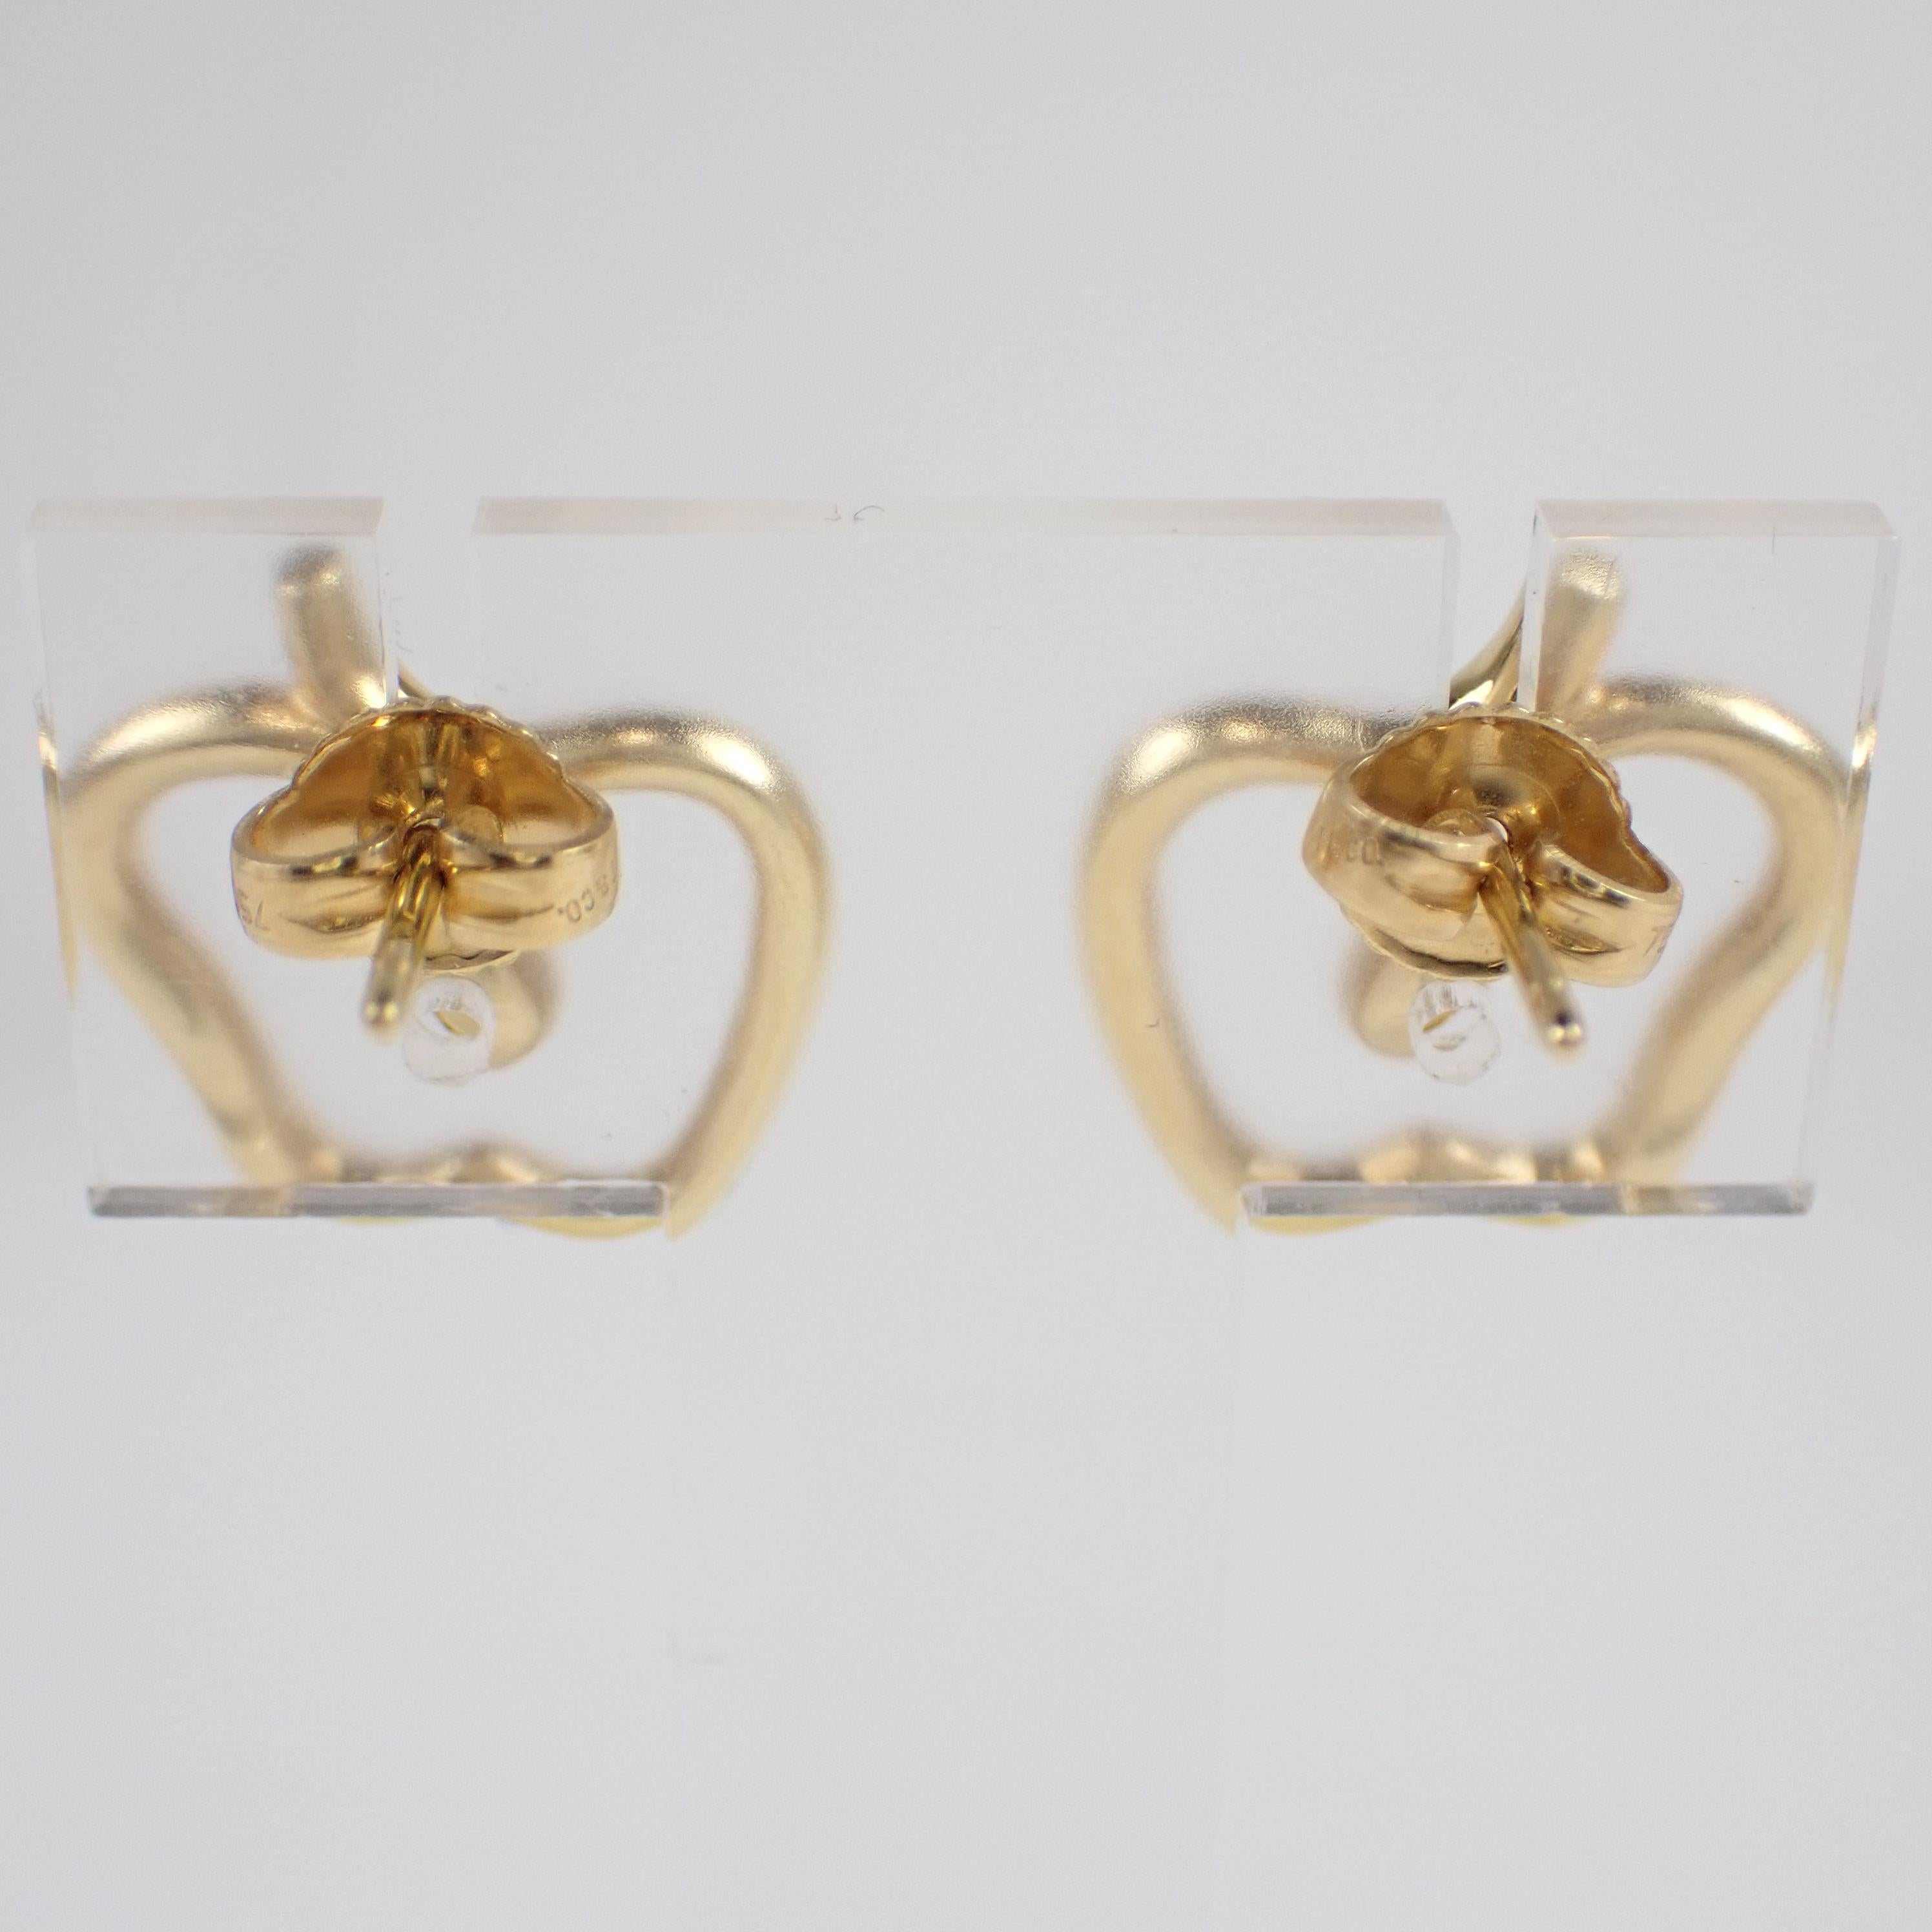 Marke : Tiffany & Co.  
Beschreibung: Tiffany & Co. 18K Gelbgold Apfel-Ohrringe 750YG Box
Metall Typ: 750YG/Gelbgold
Gewicht 6,2 g
Zustand: Gebraucht; leichte Gebrauchsspuren
Box -  Nicht inbegriffen
Papiere - Eingeschlossen
